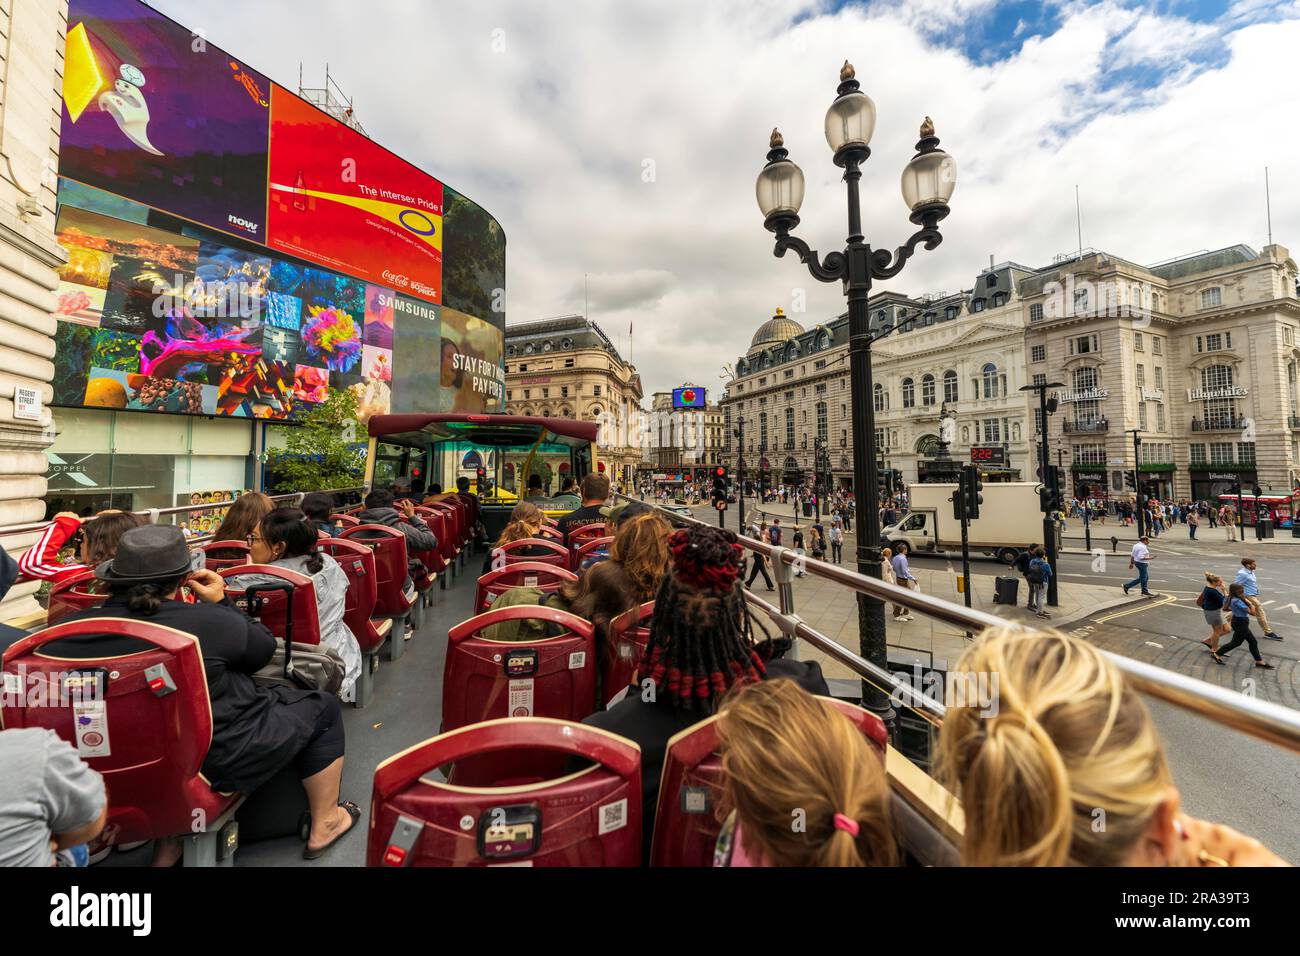 Touristen fahren in einem berühmten roten Doppeldeckerbus durch den Piccadilly Circus, einen berühmten belebten Platz in London. Beste Aussicht auf die Stadt vom offenen Bus. Stockfoto